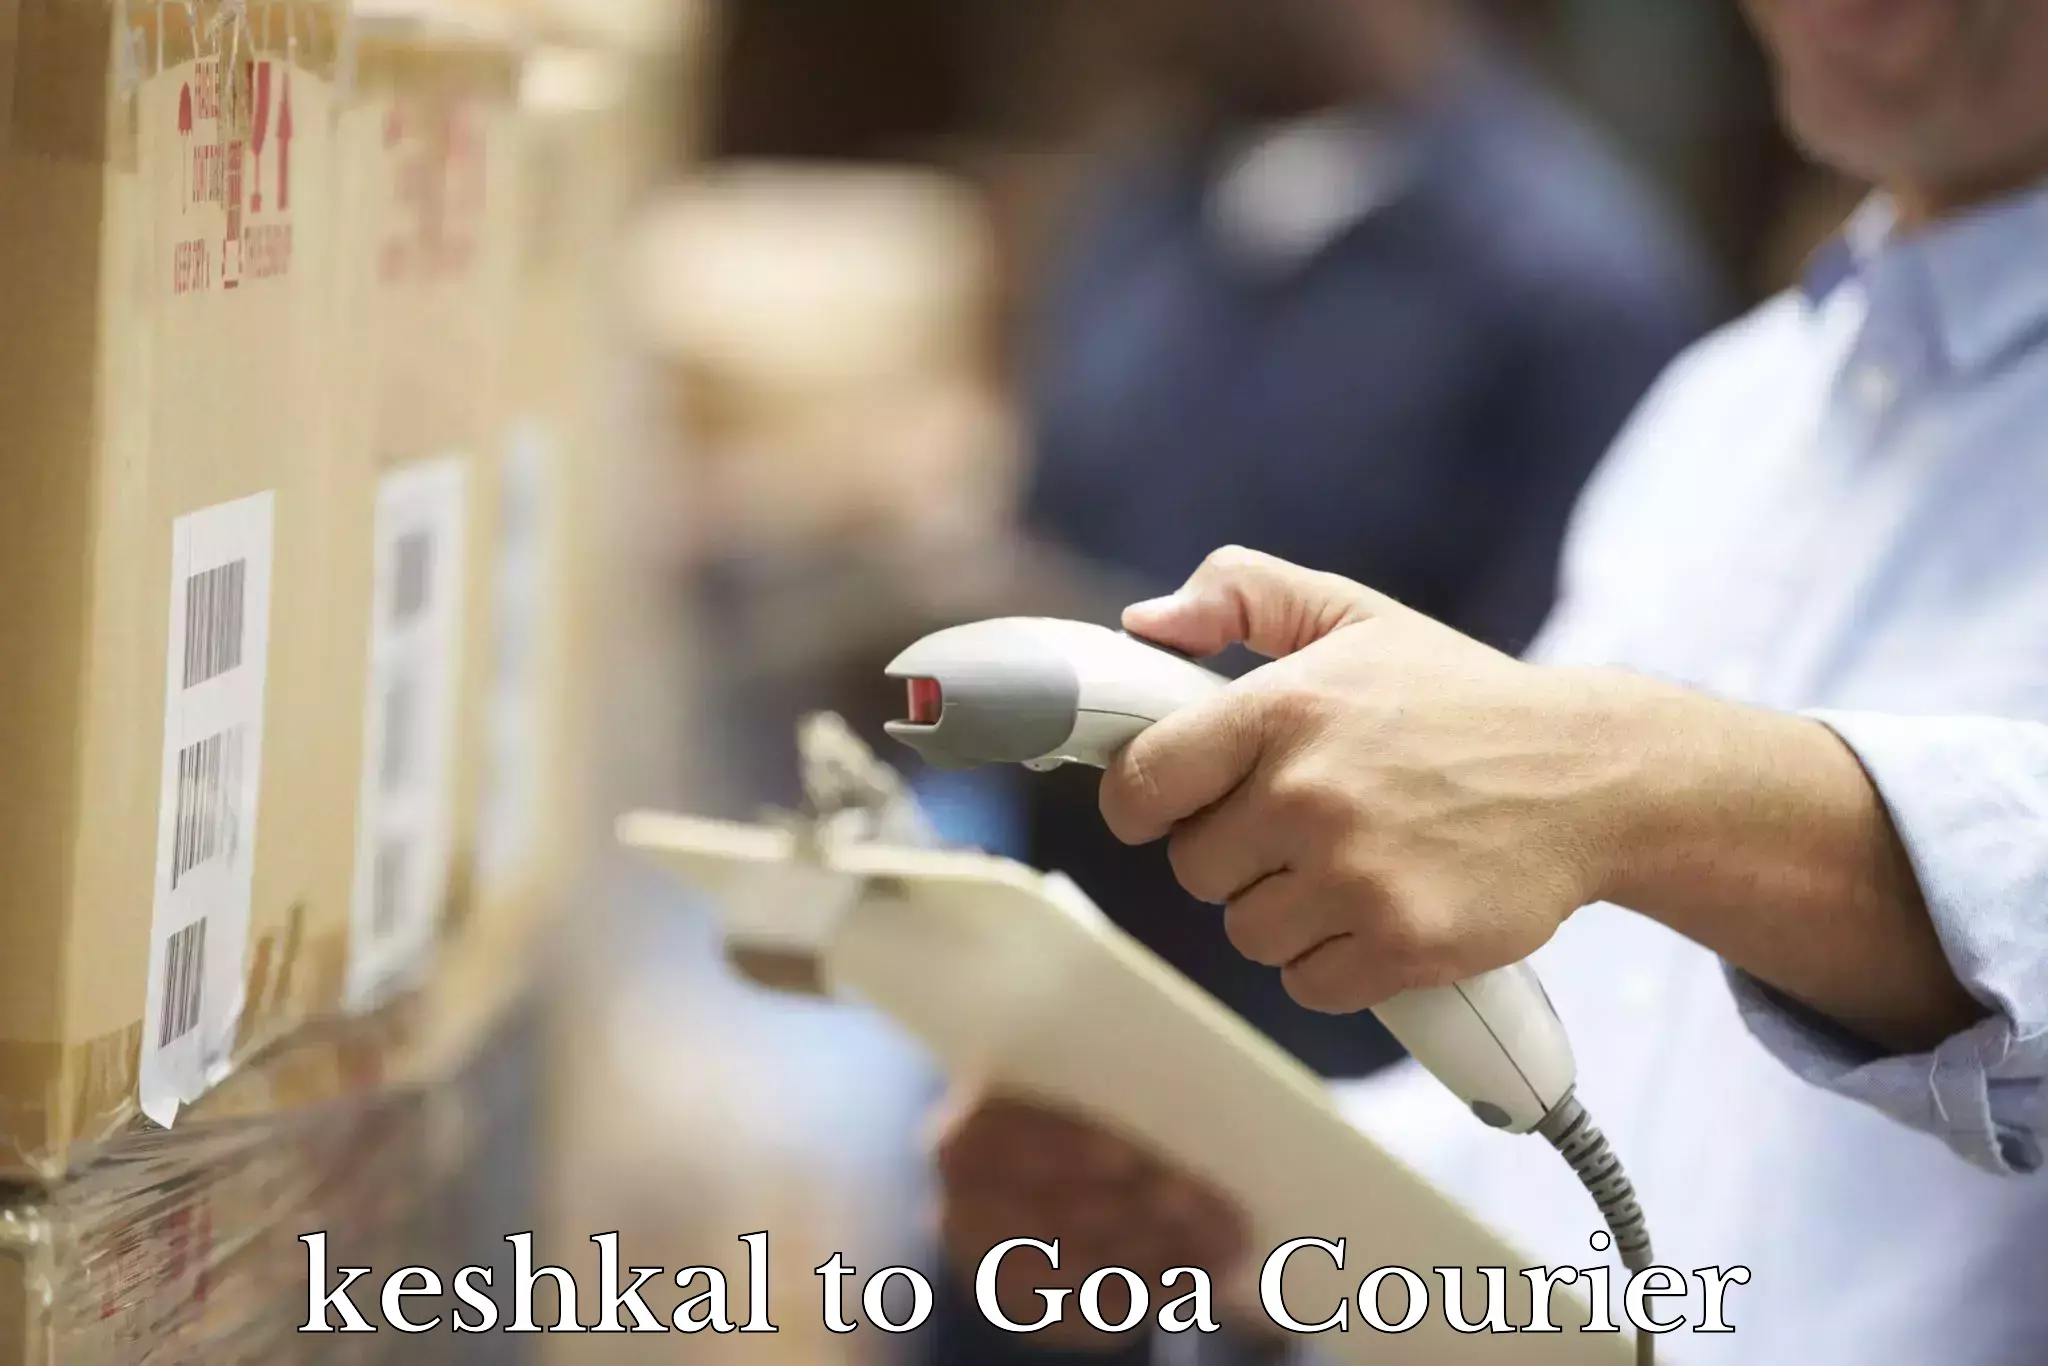 Multi-modal transportation keshkal to South Goa